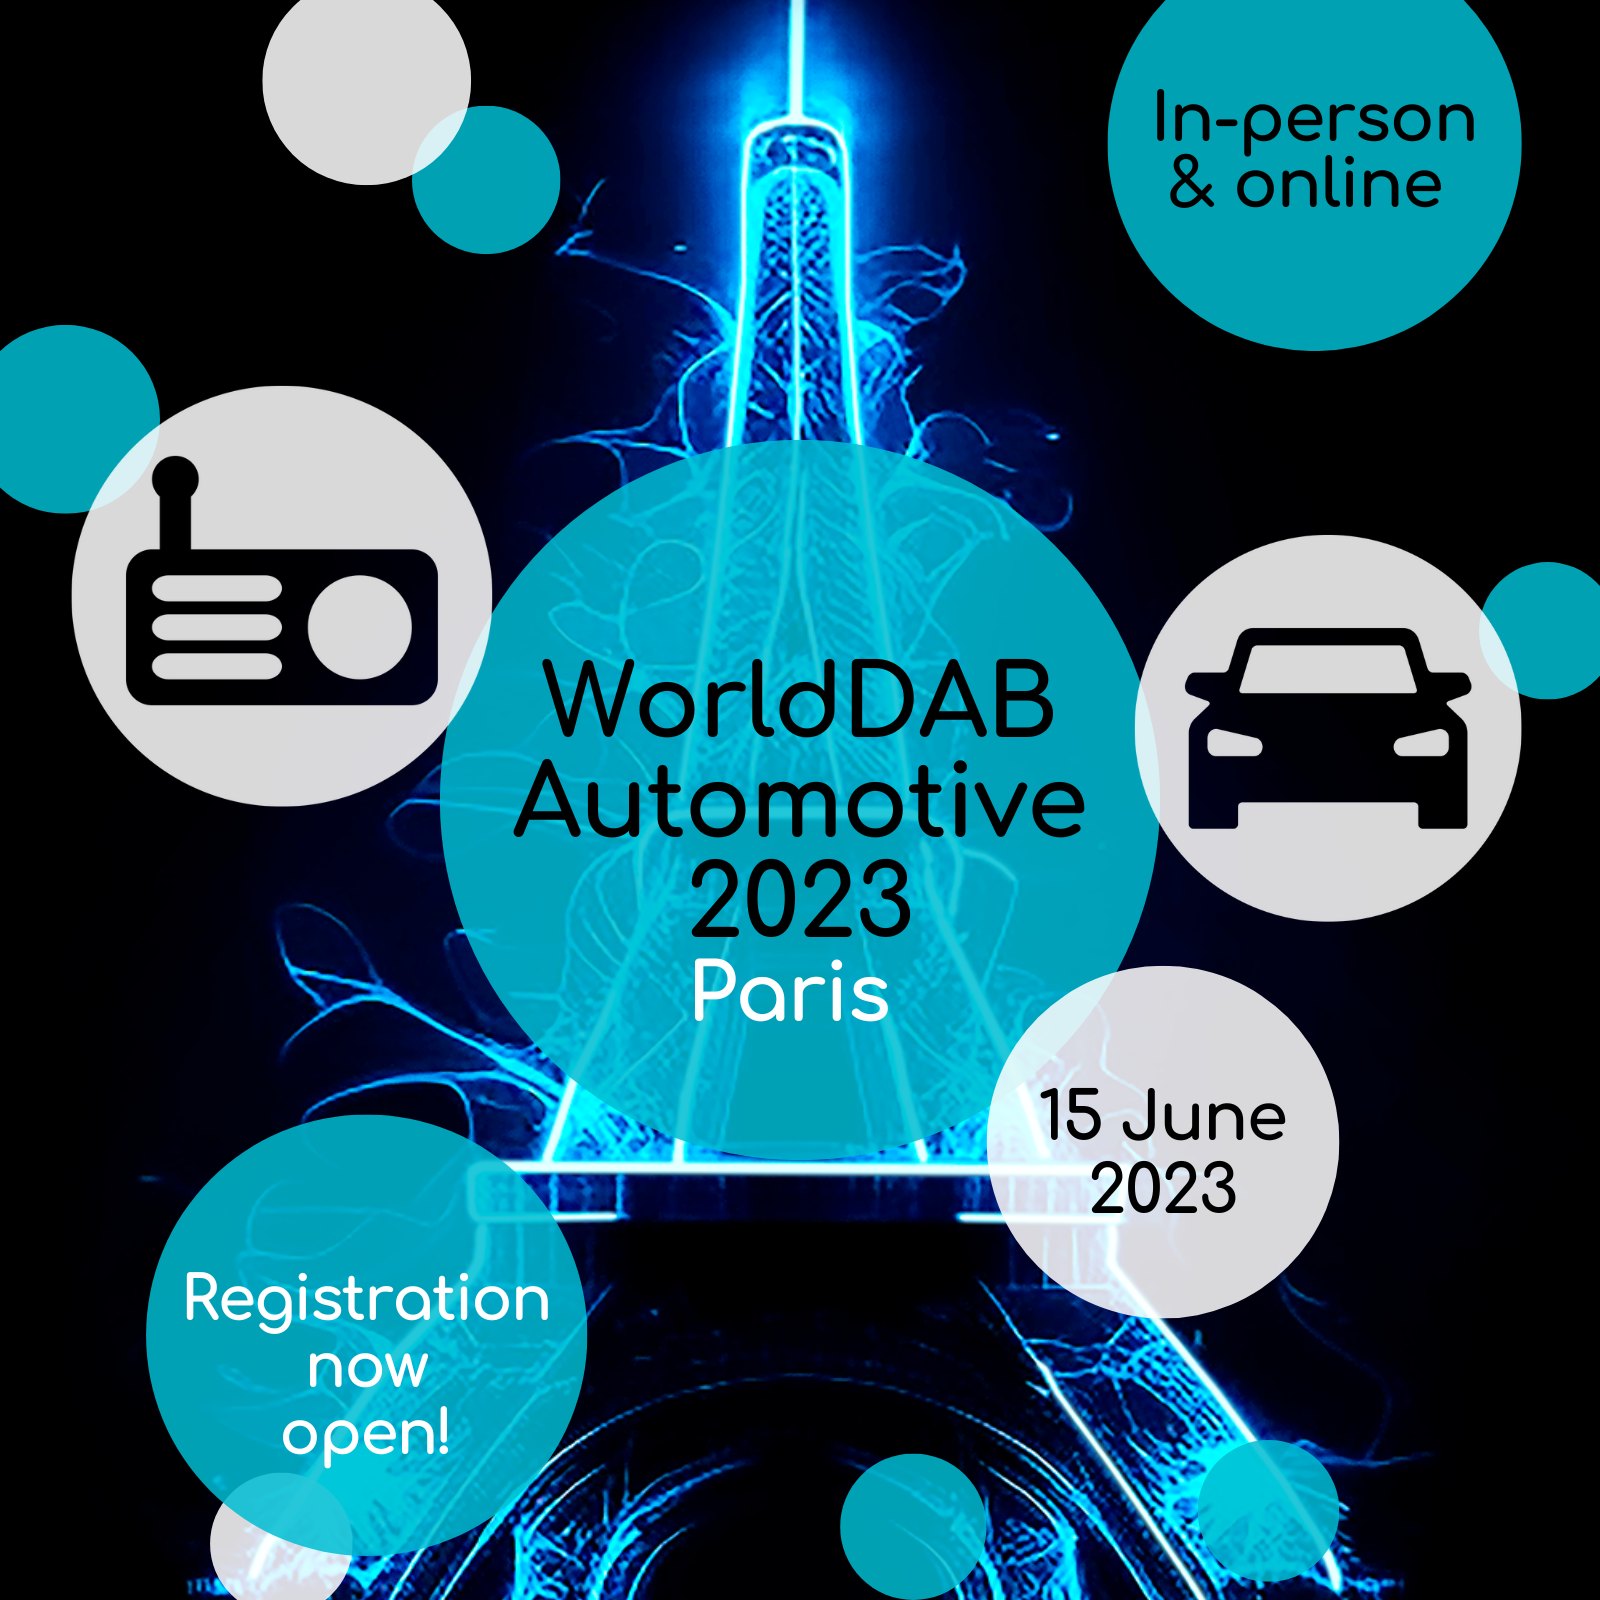 Paris accueille le WorldDAB Automotive 2023 